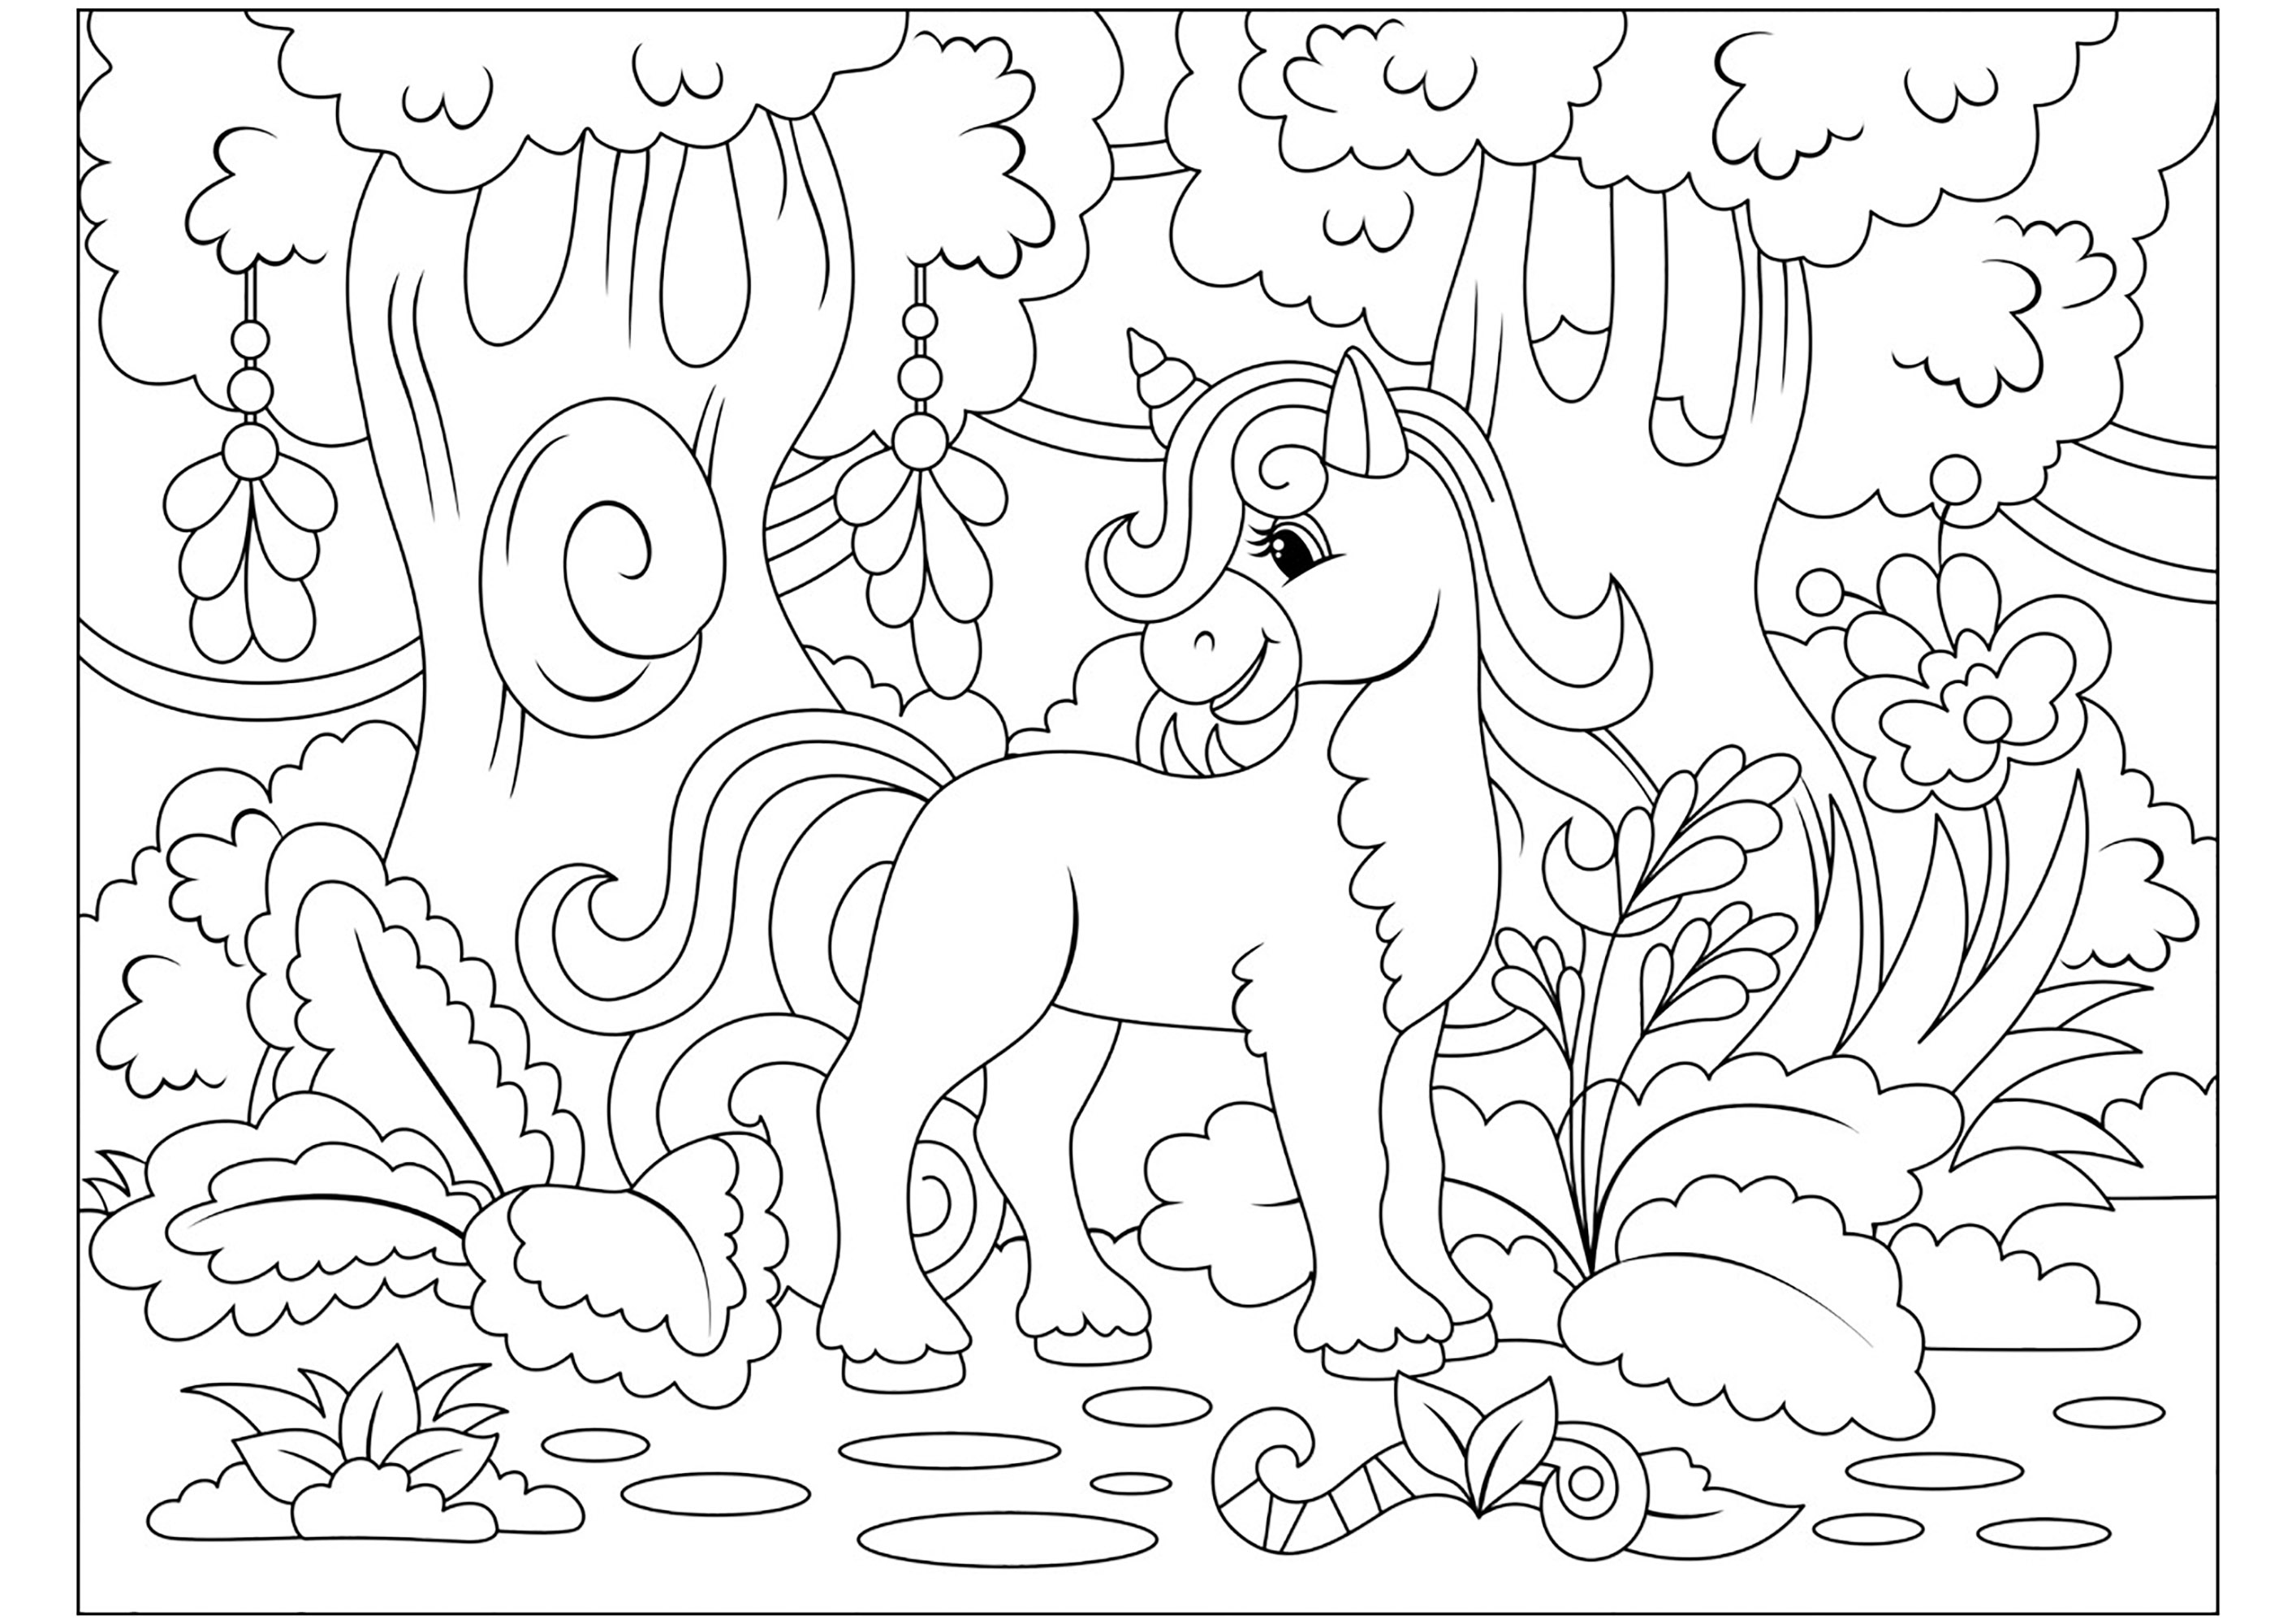 Joven unicornio en un bosque encantado. Bonitos detalles en color, Origen : 123rf   Artista : Toricheks